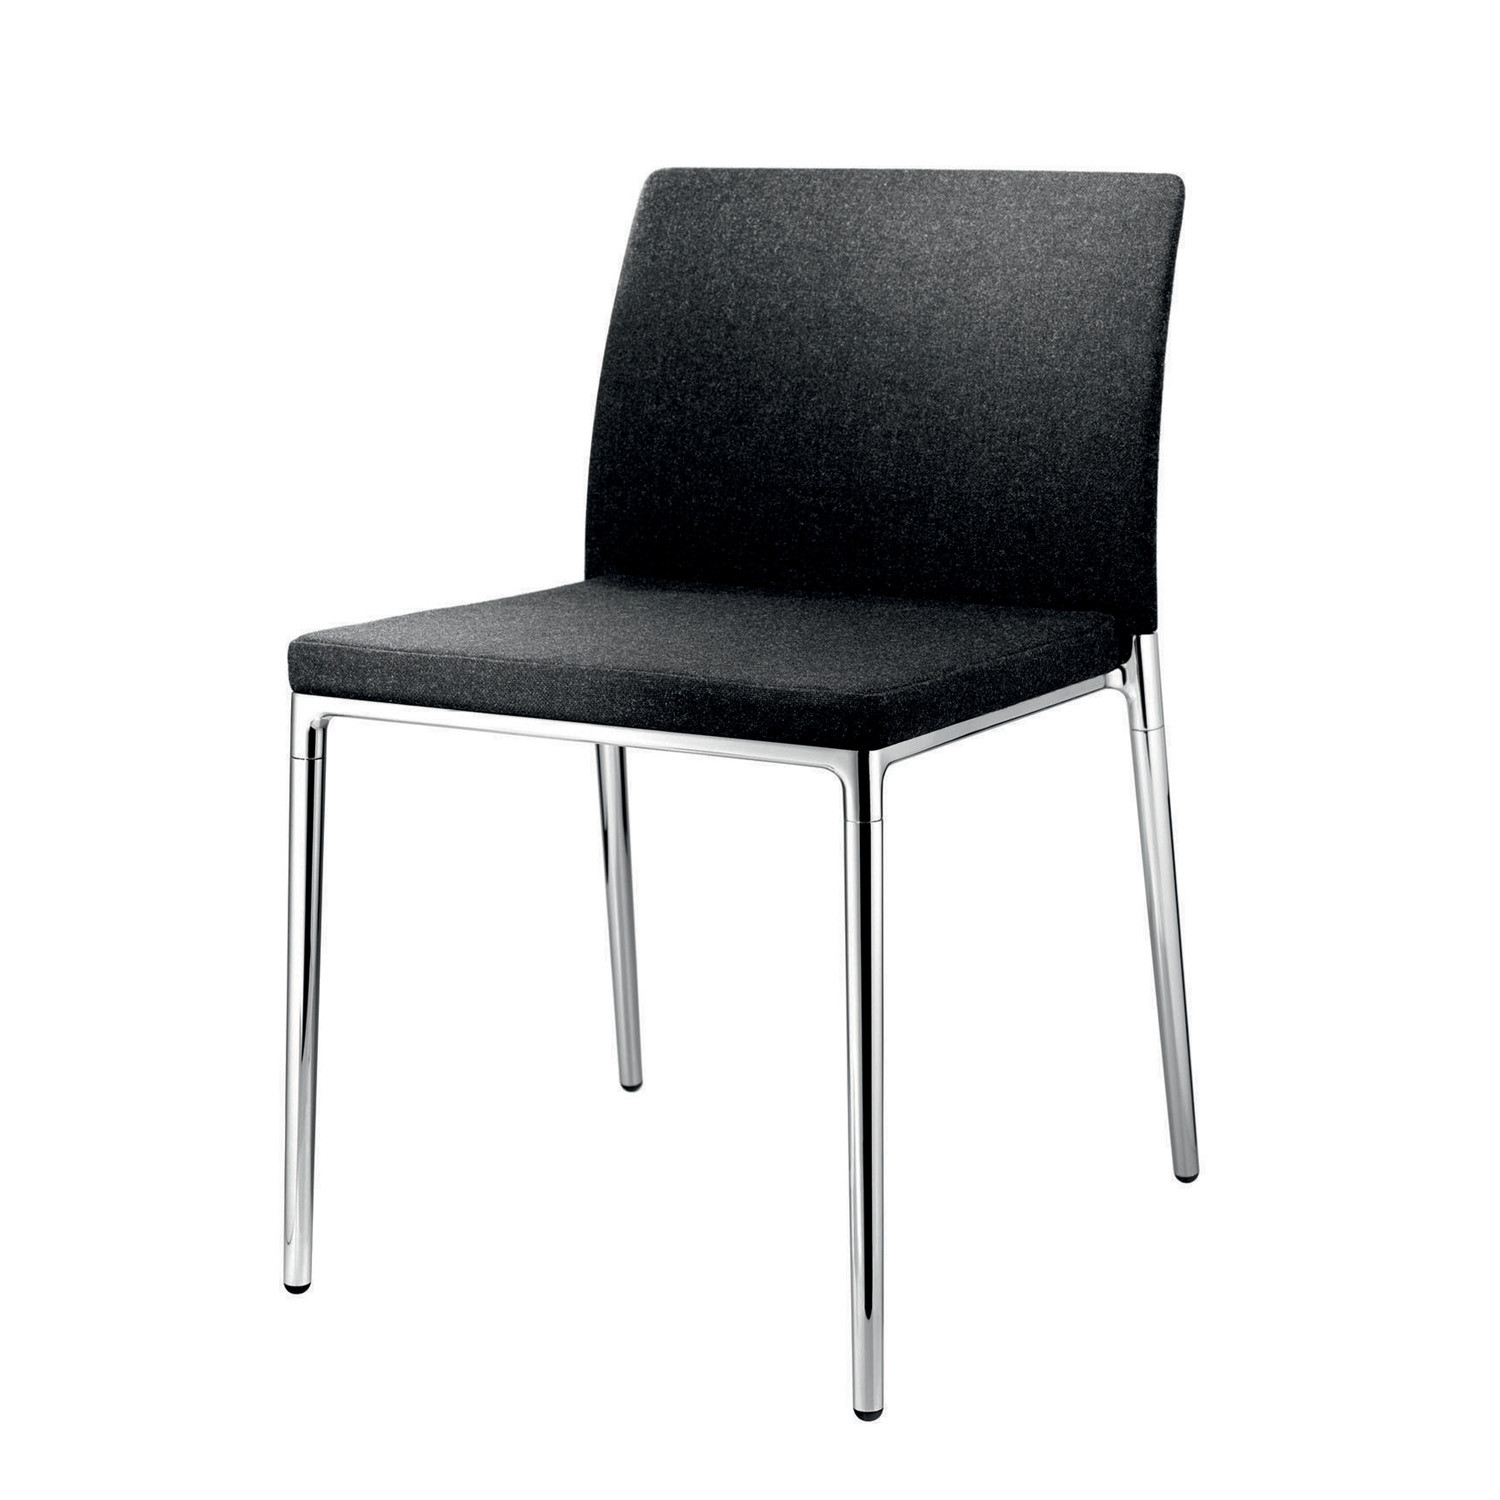 Ceno Four-Legged Chair